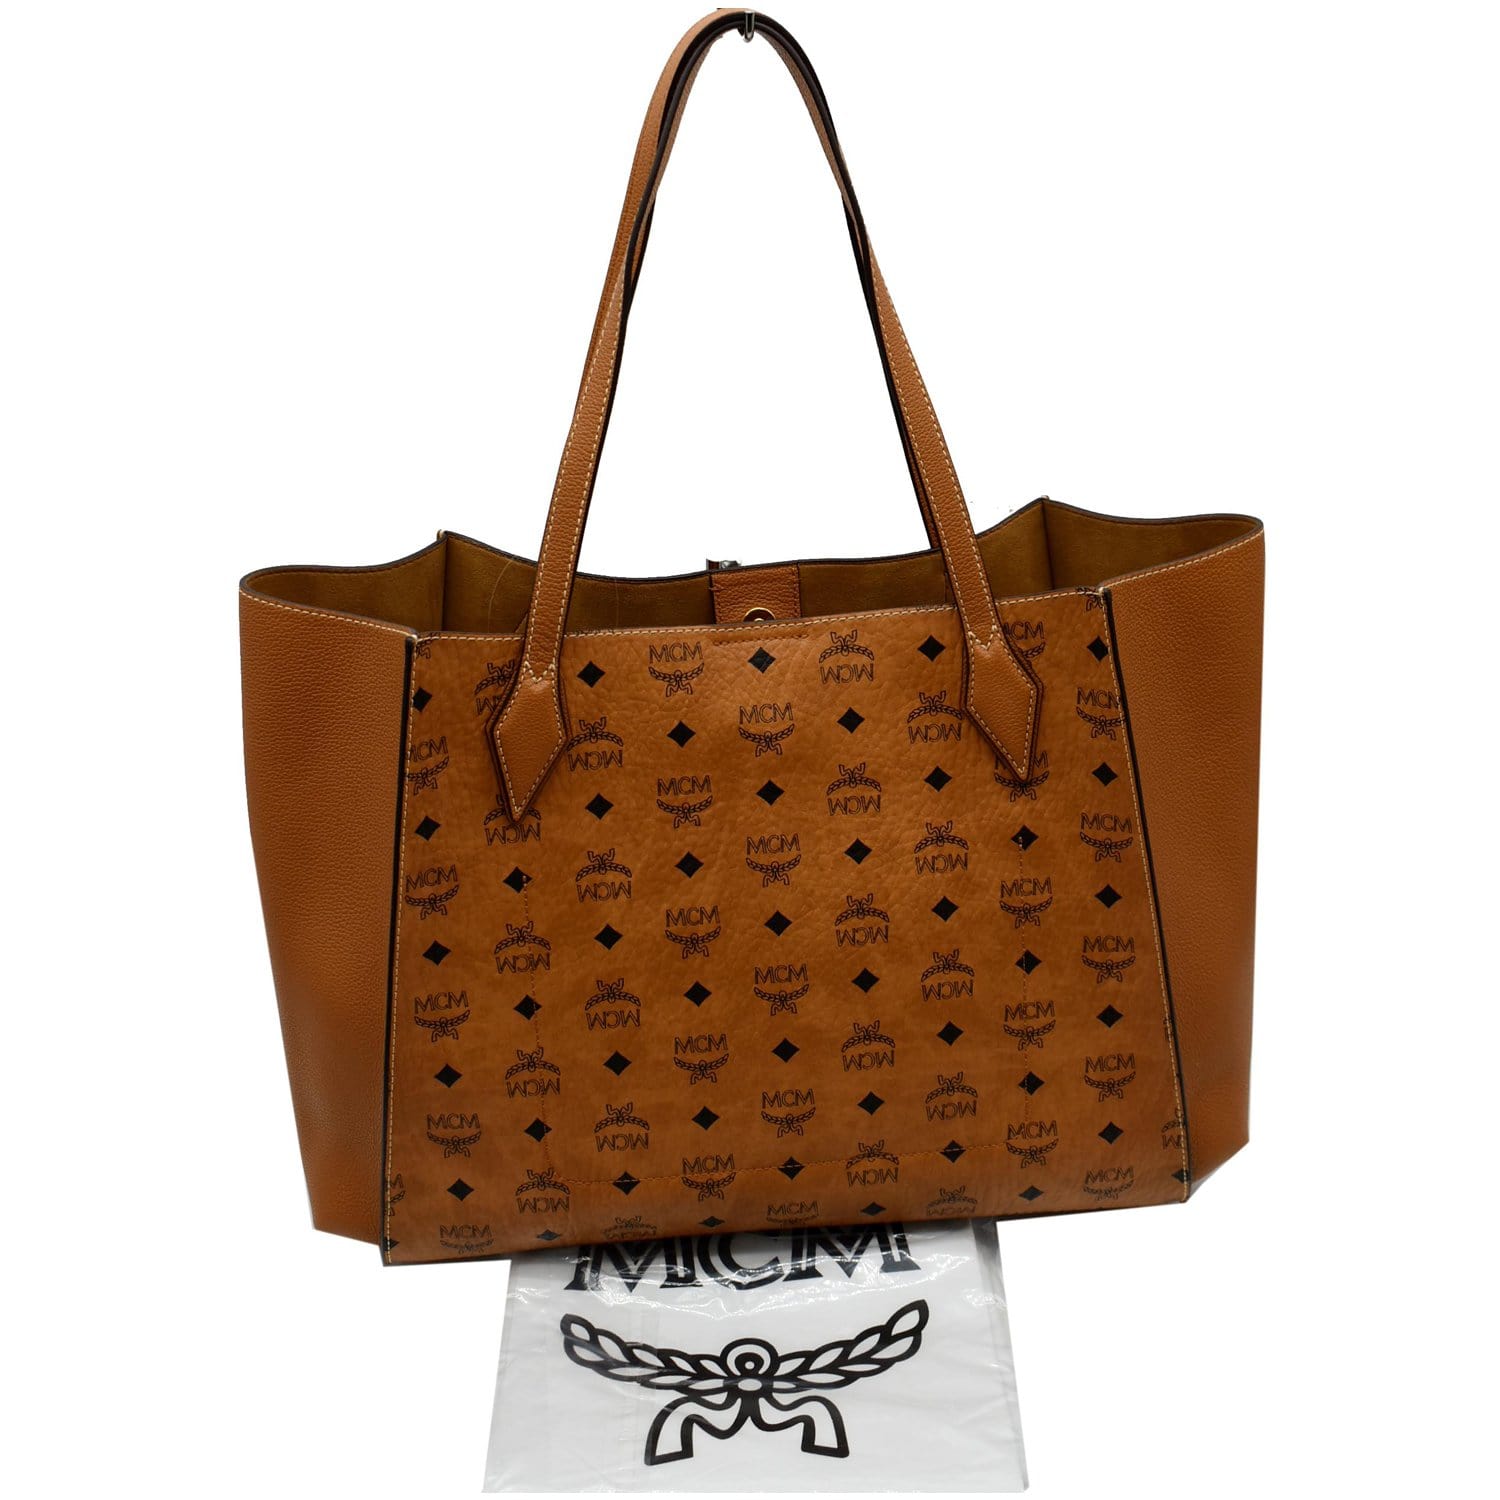 Handbag Luxury Designer By Mcm Size: Large